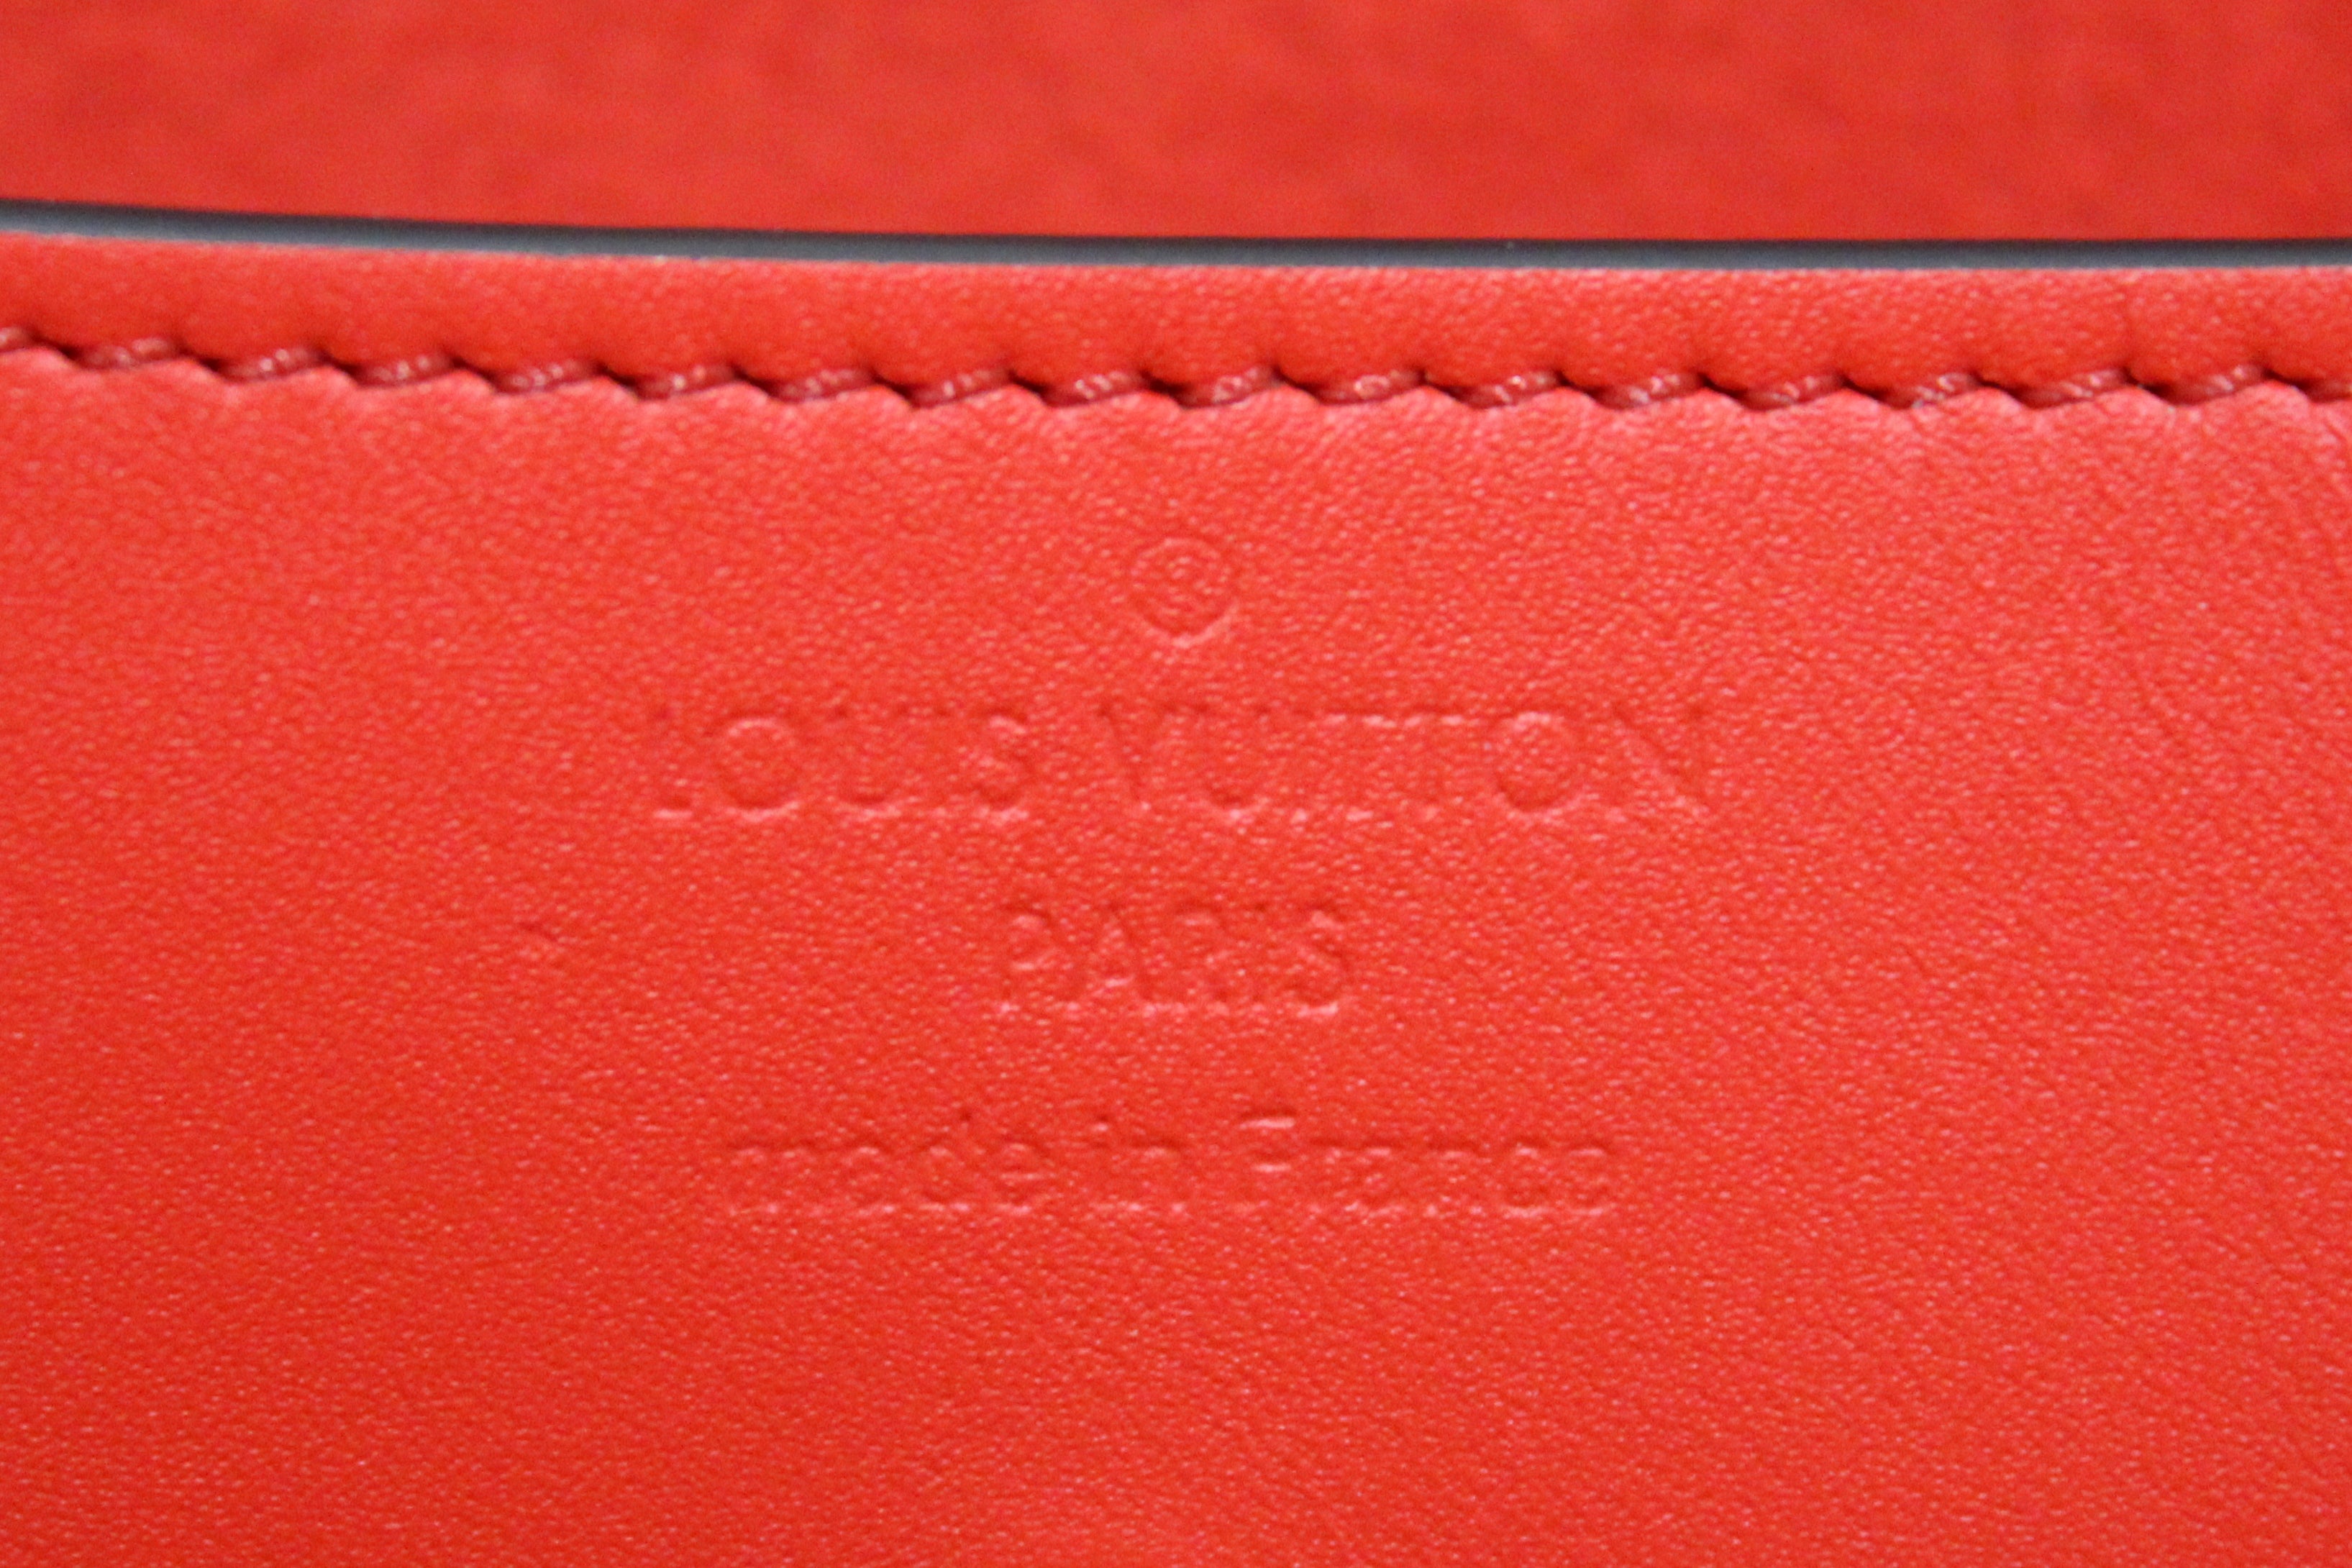 Authentic Louis Vuitton Classic Monogram Canvas Glasses Case – Paris  Station Shop